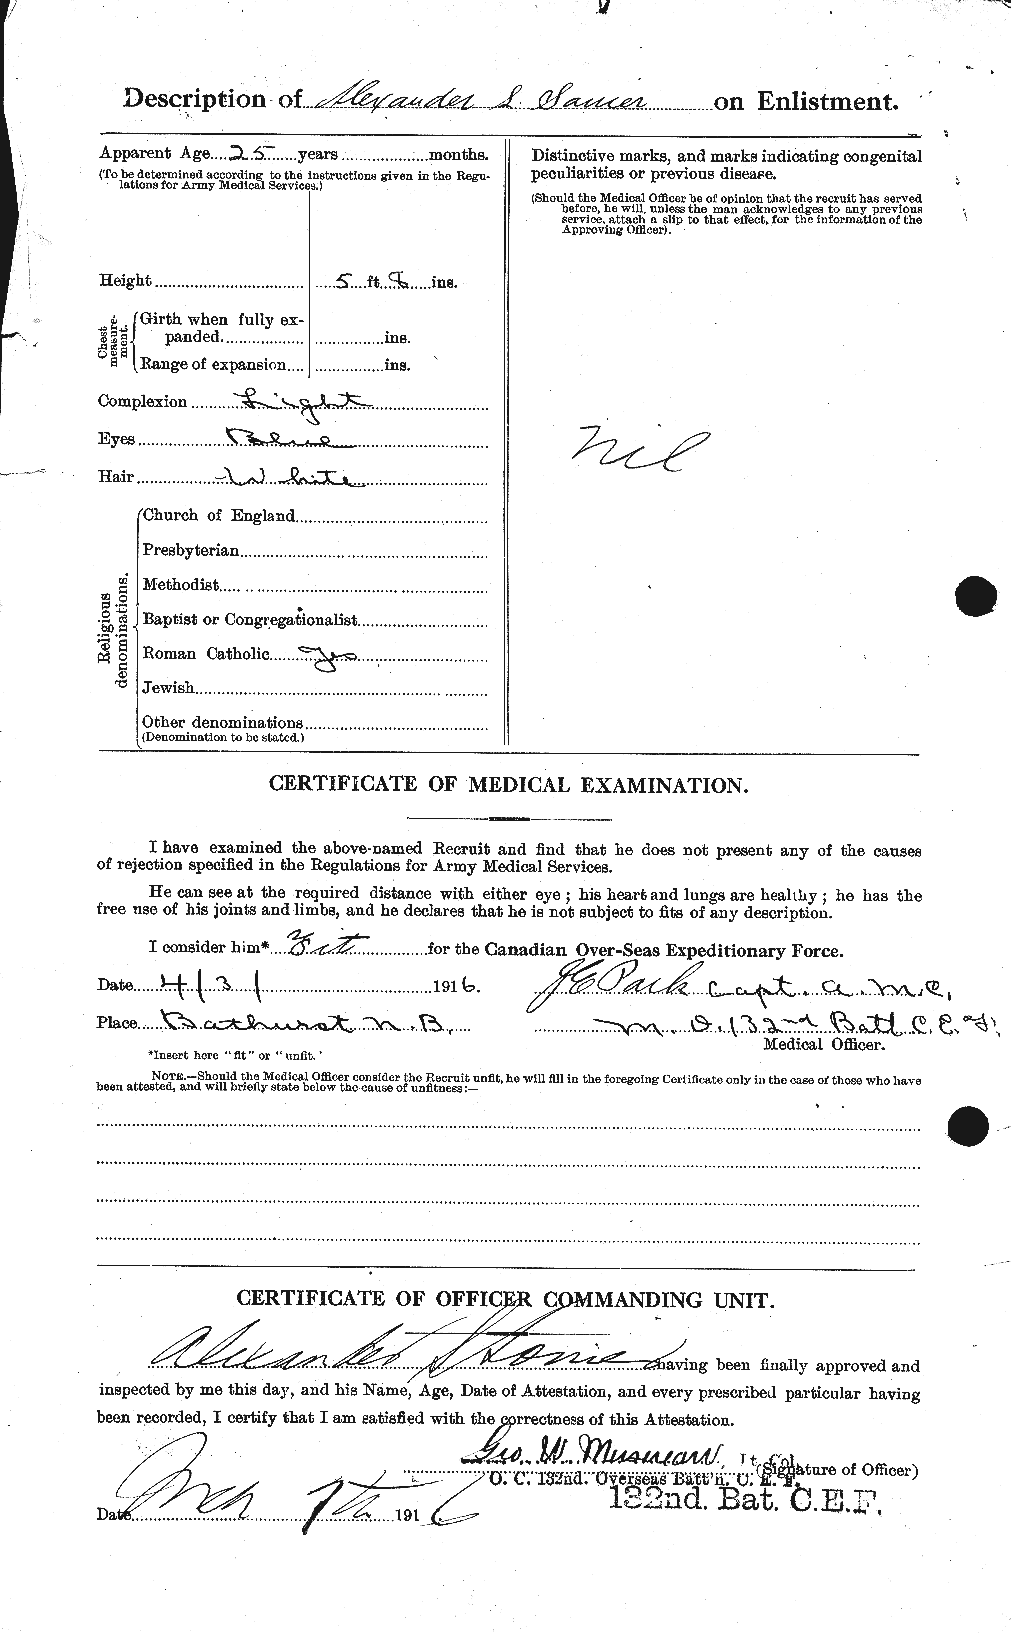 Dossiers du Personnel de la Première Guerre mondiale - CEC 111043b